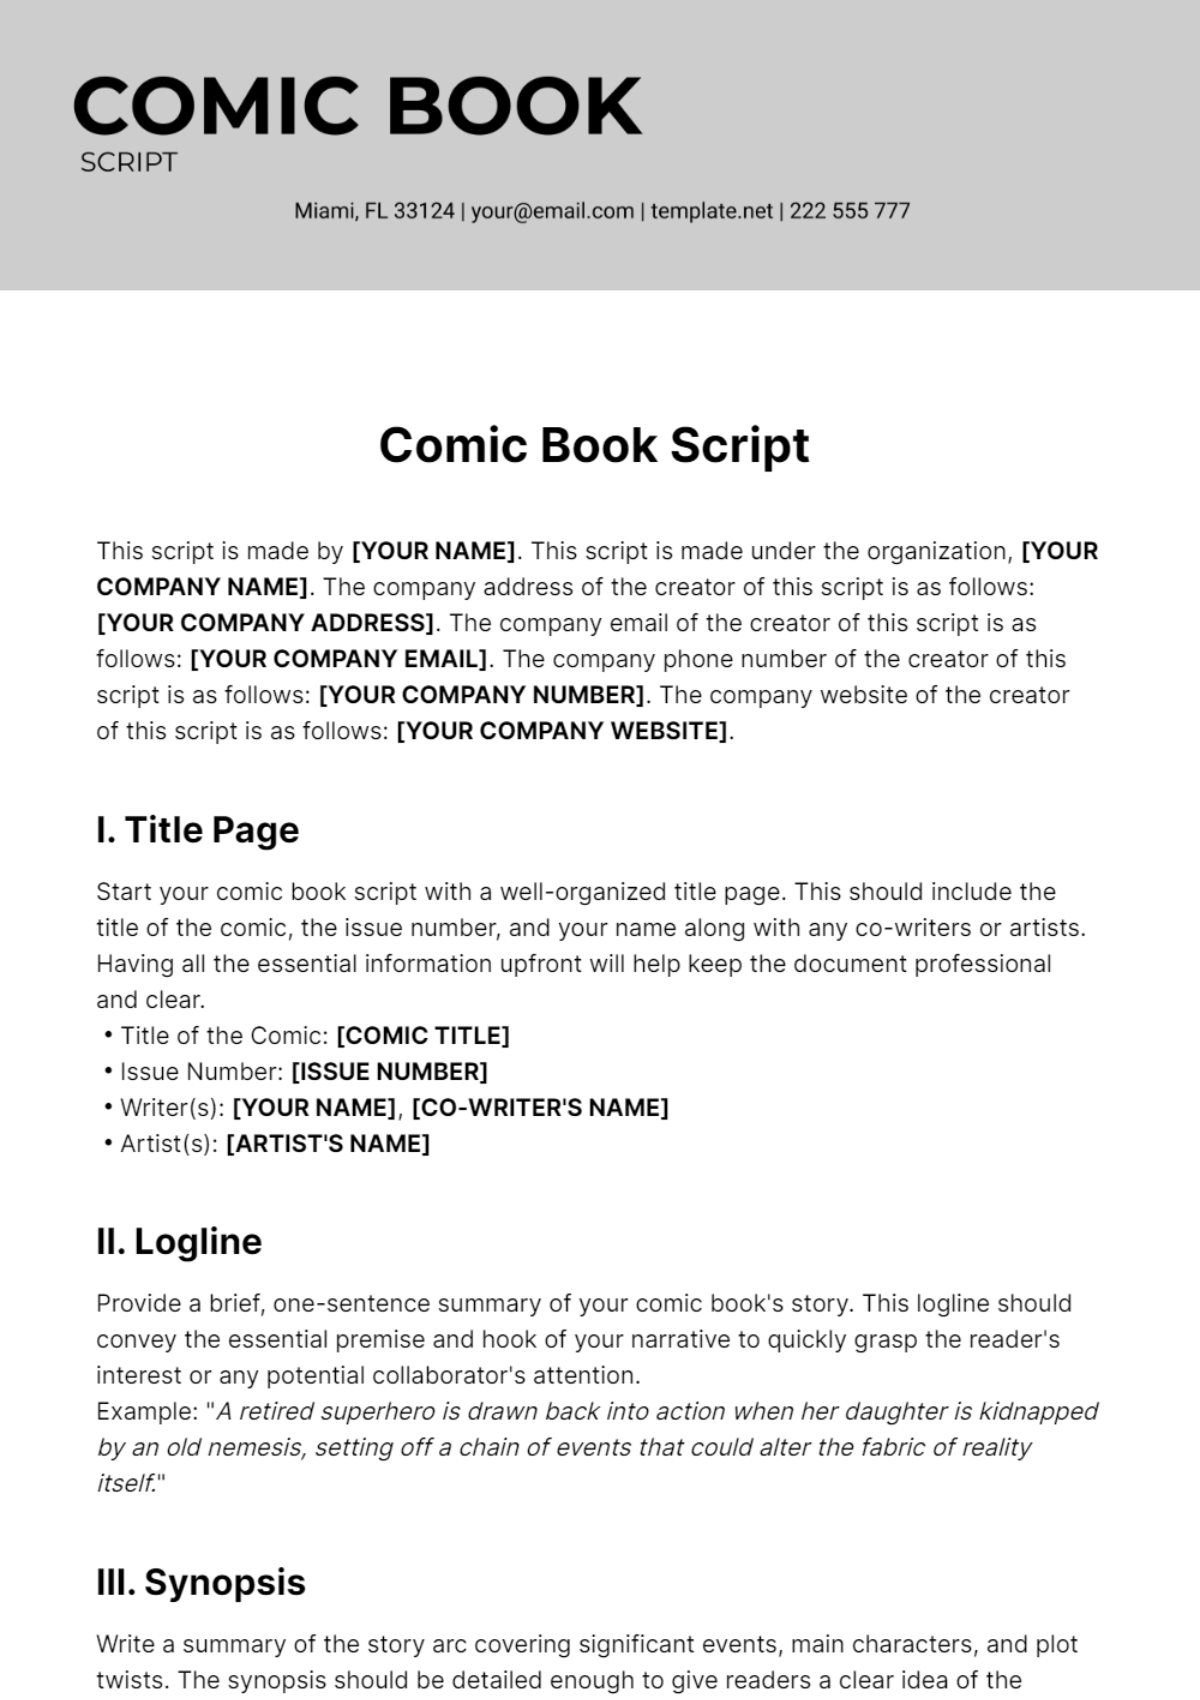 Comic Book Script Template